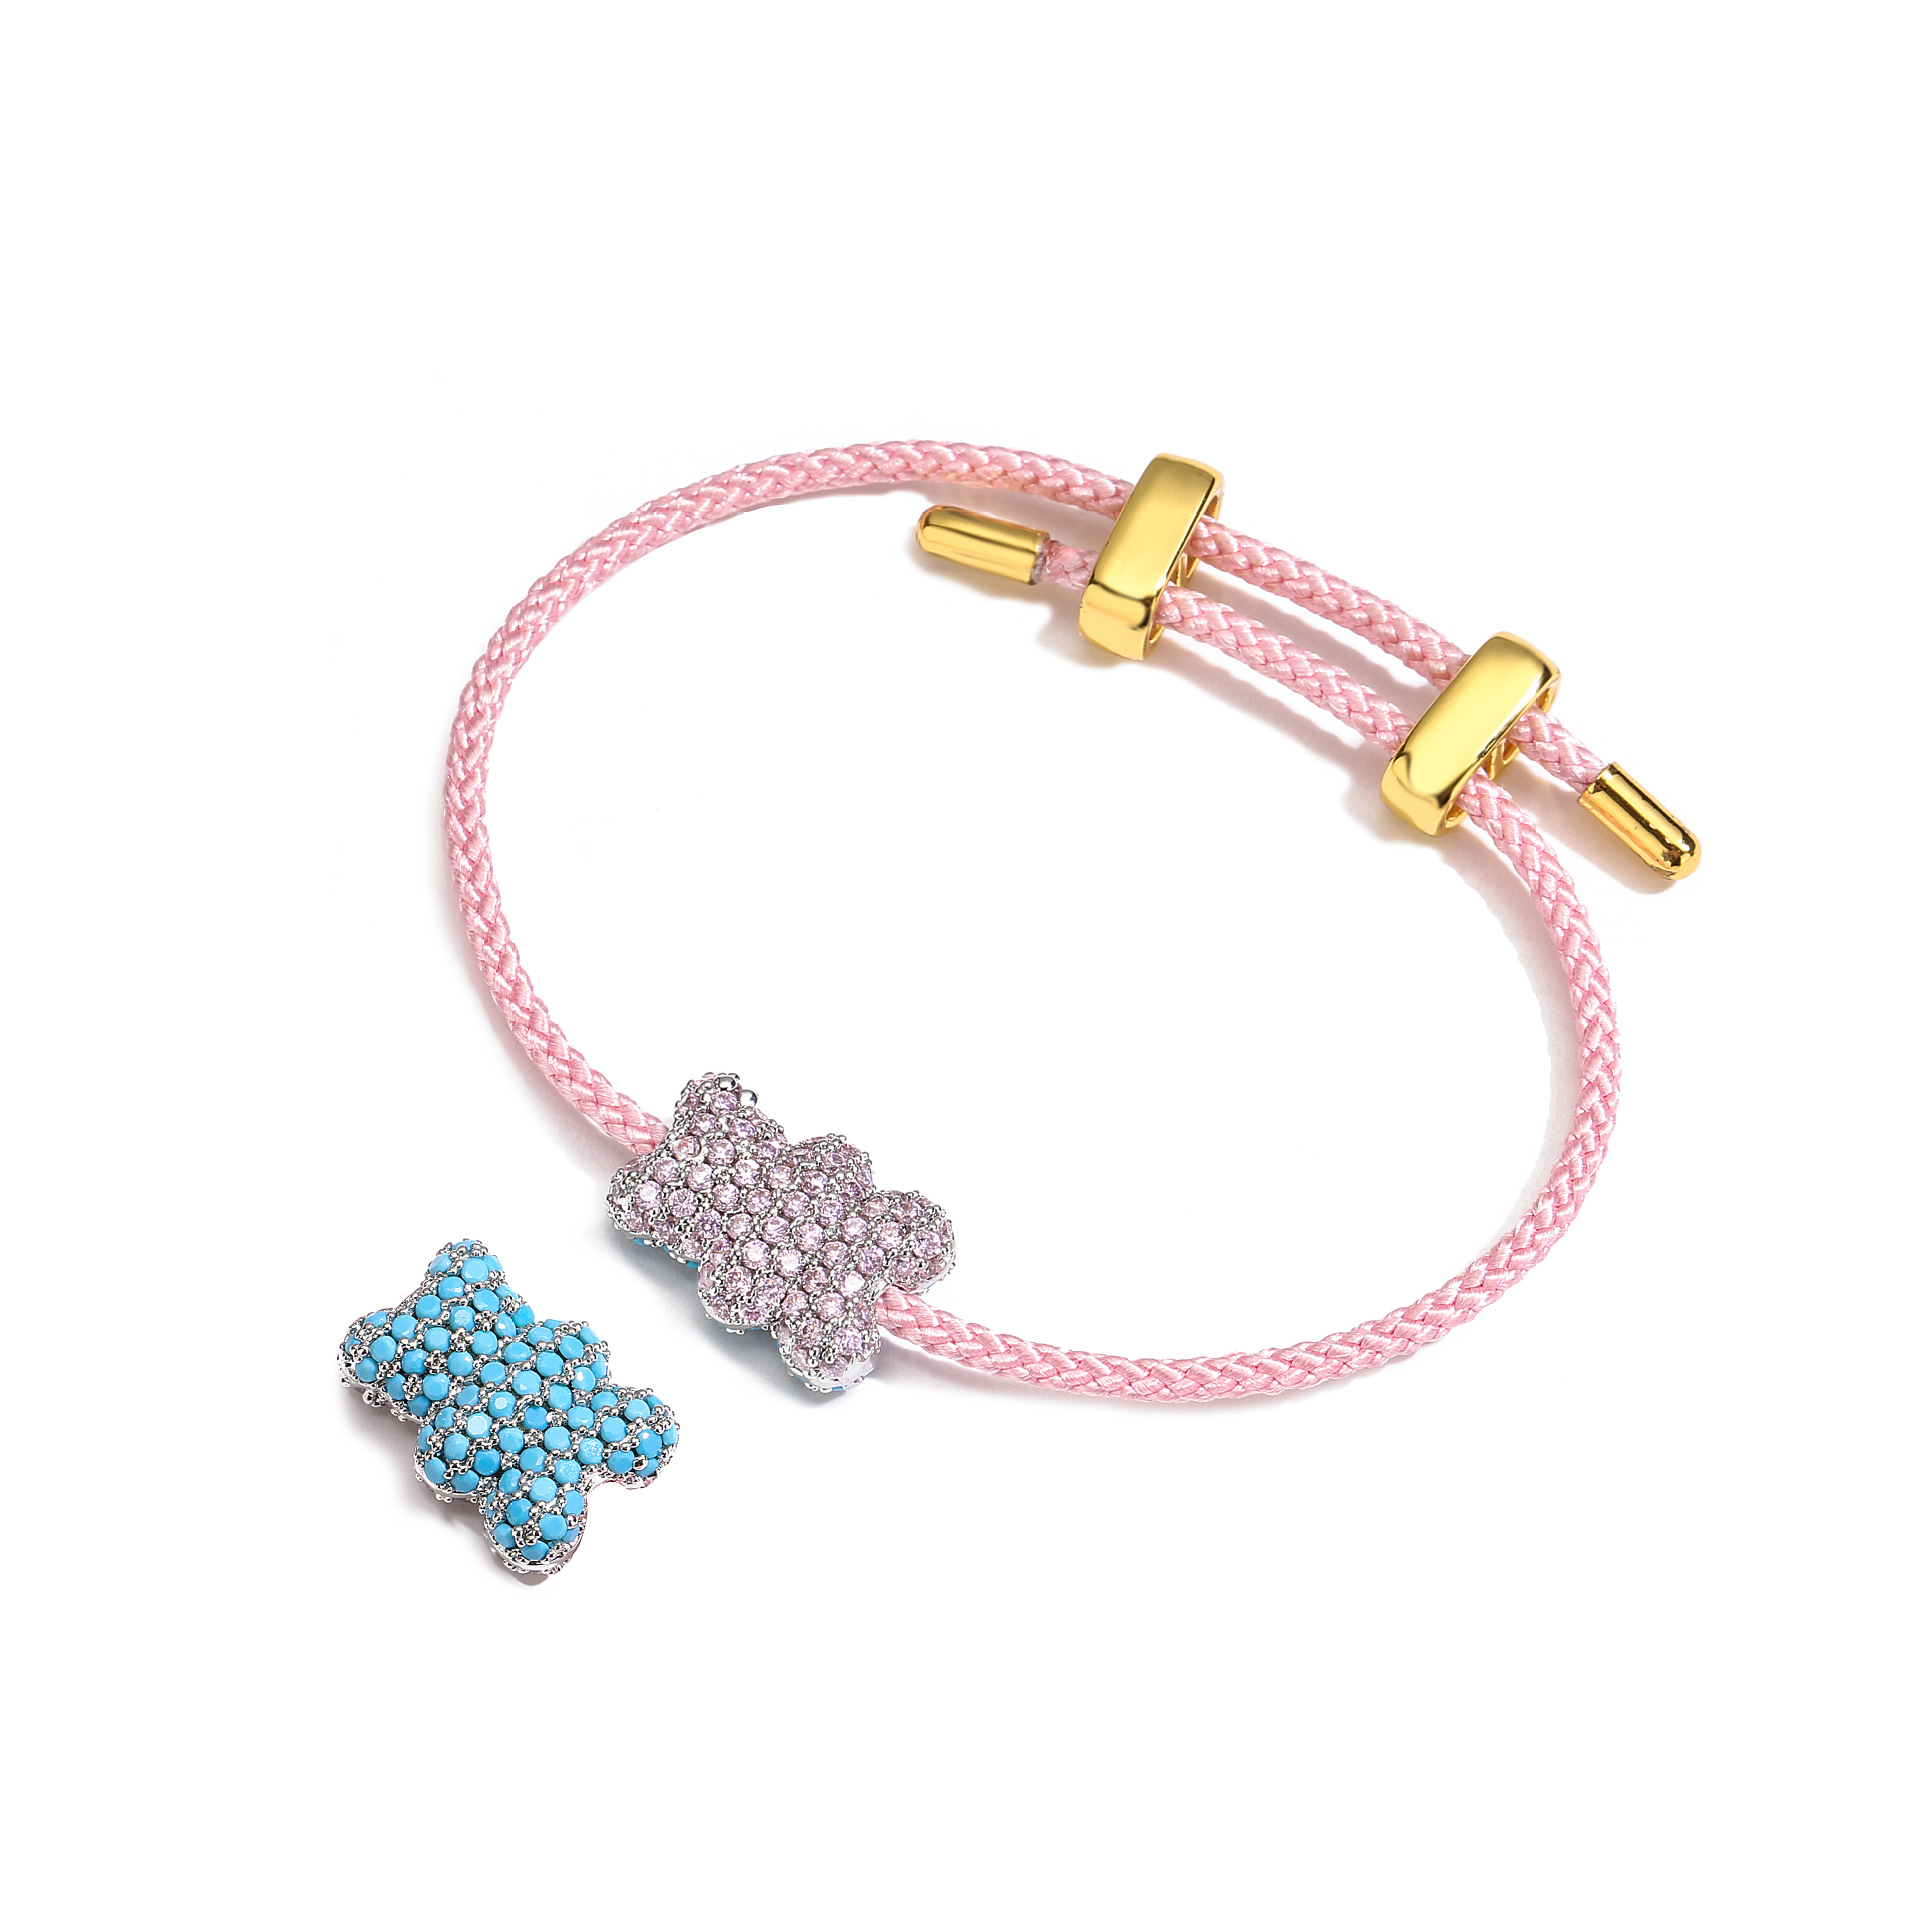 2:Pink bracelet